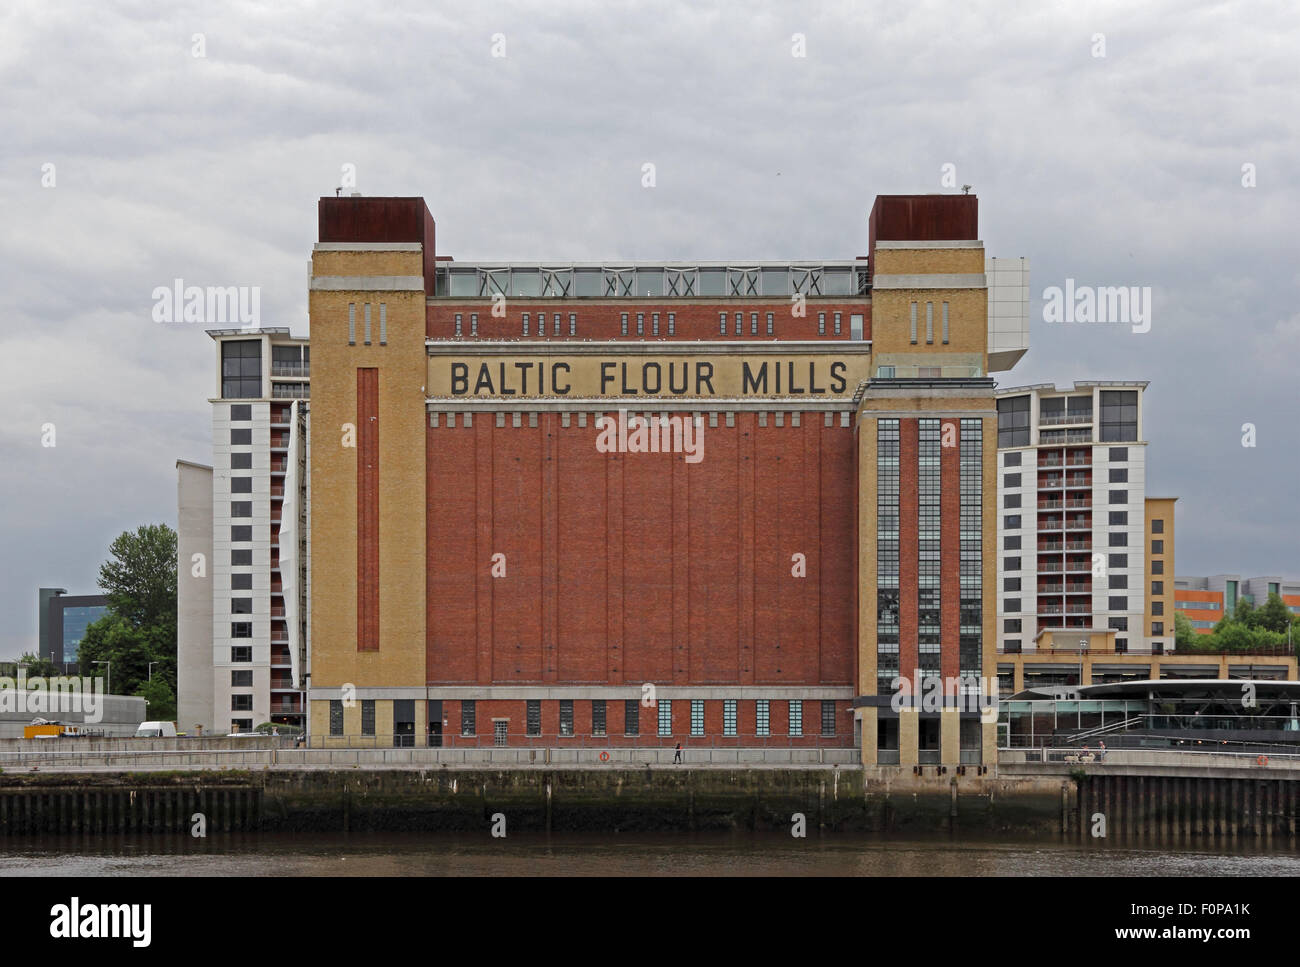 Baltique emblématique de moulins à farine, aujourd'hui un centre d'art contemporain, Gateshead Banque D'Images